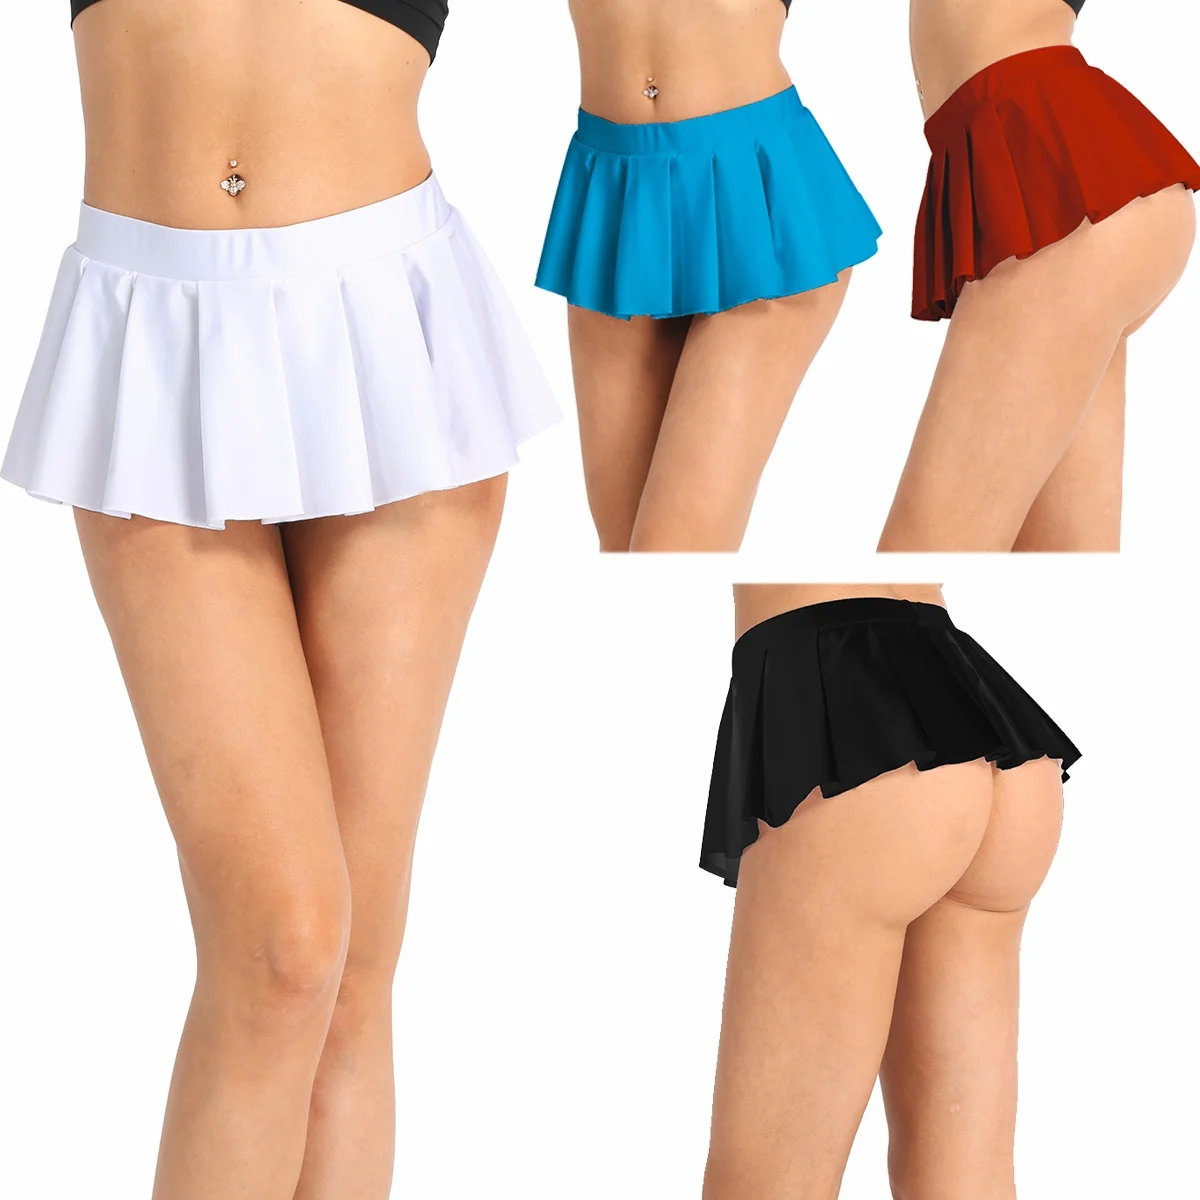 Женская Блестящая мини-юбка для Болельщицы, сексуальная школьная форма, плиссированная мини-юбка с низкой посадкой, женские вечерние Клубные костюмы, горячее ночное белье